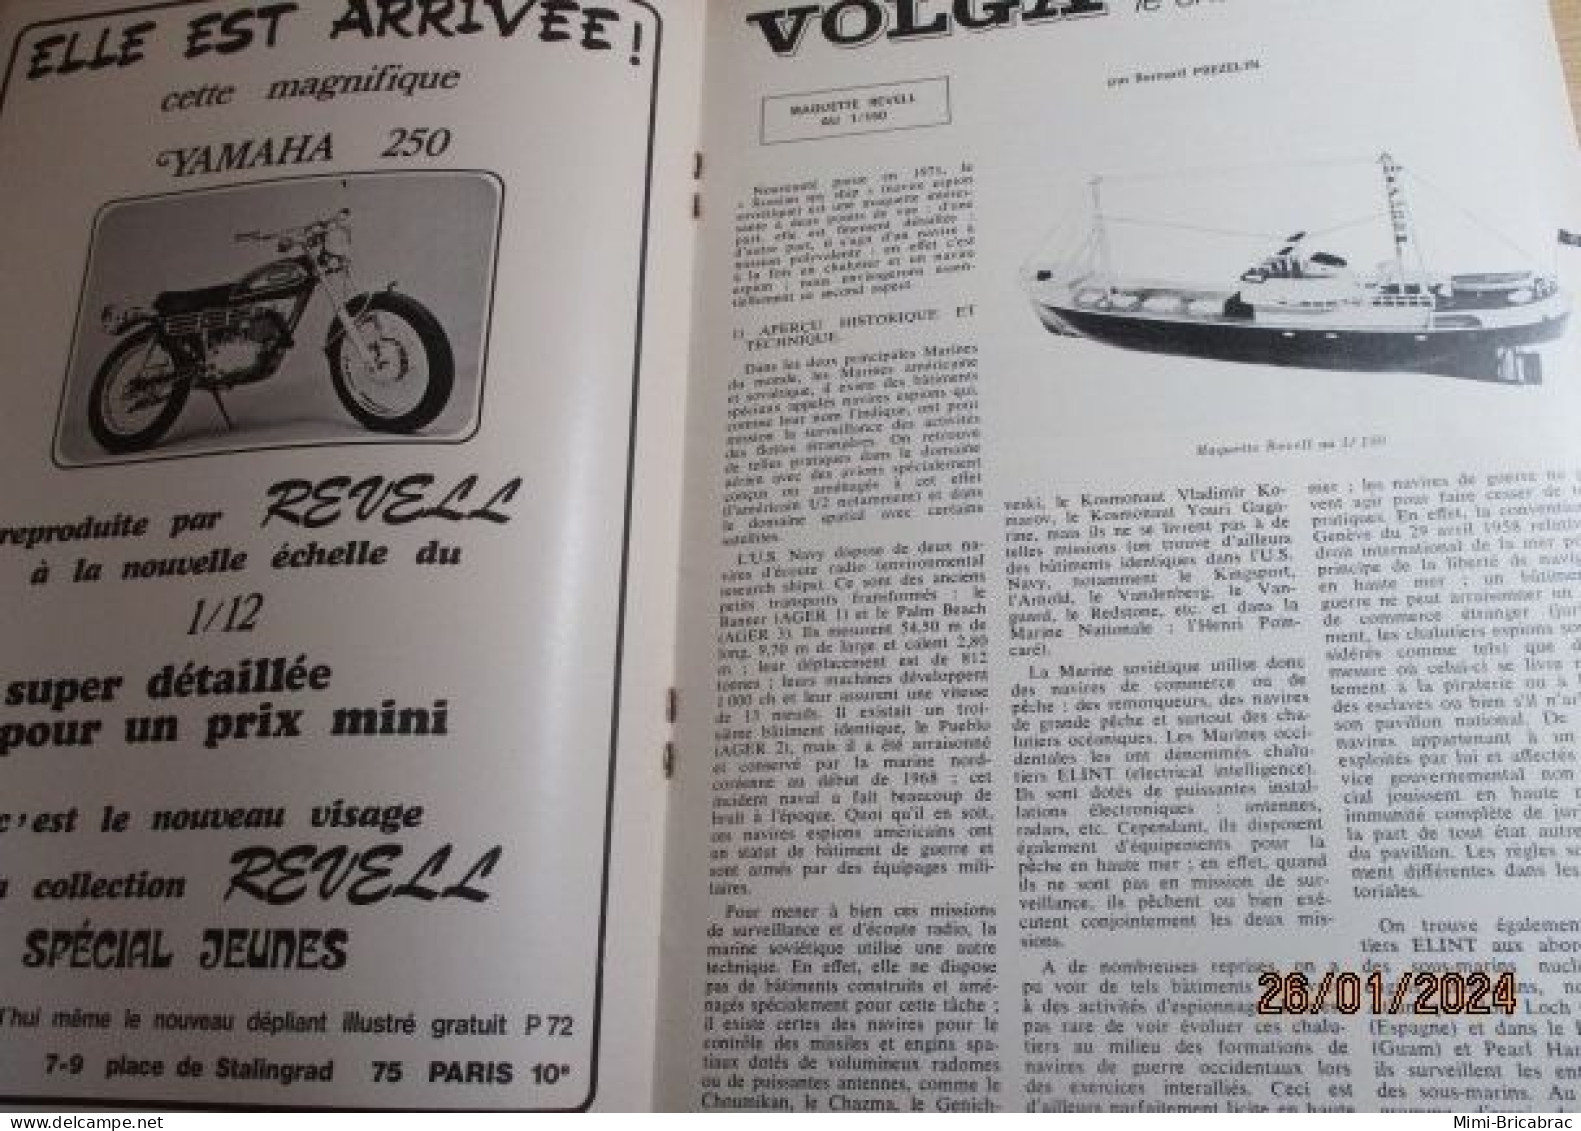 CAGI 1e Revue de maquettisme plastique années 60/70 : MPM n°18 de 1972 très bon état ! Sommaire en photo 2 ou 3